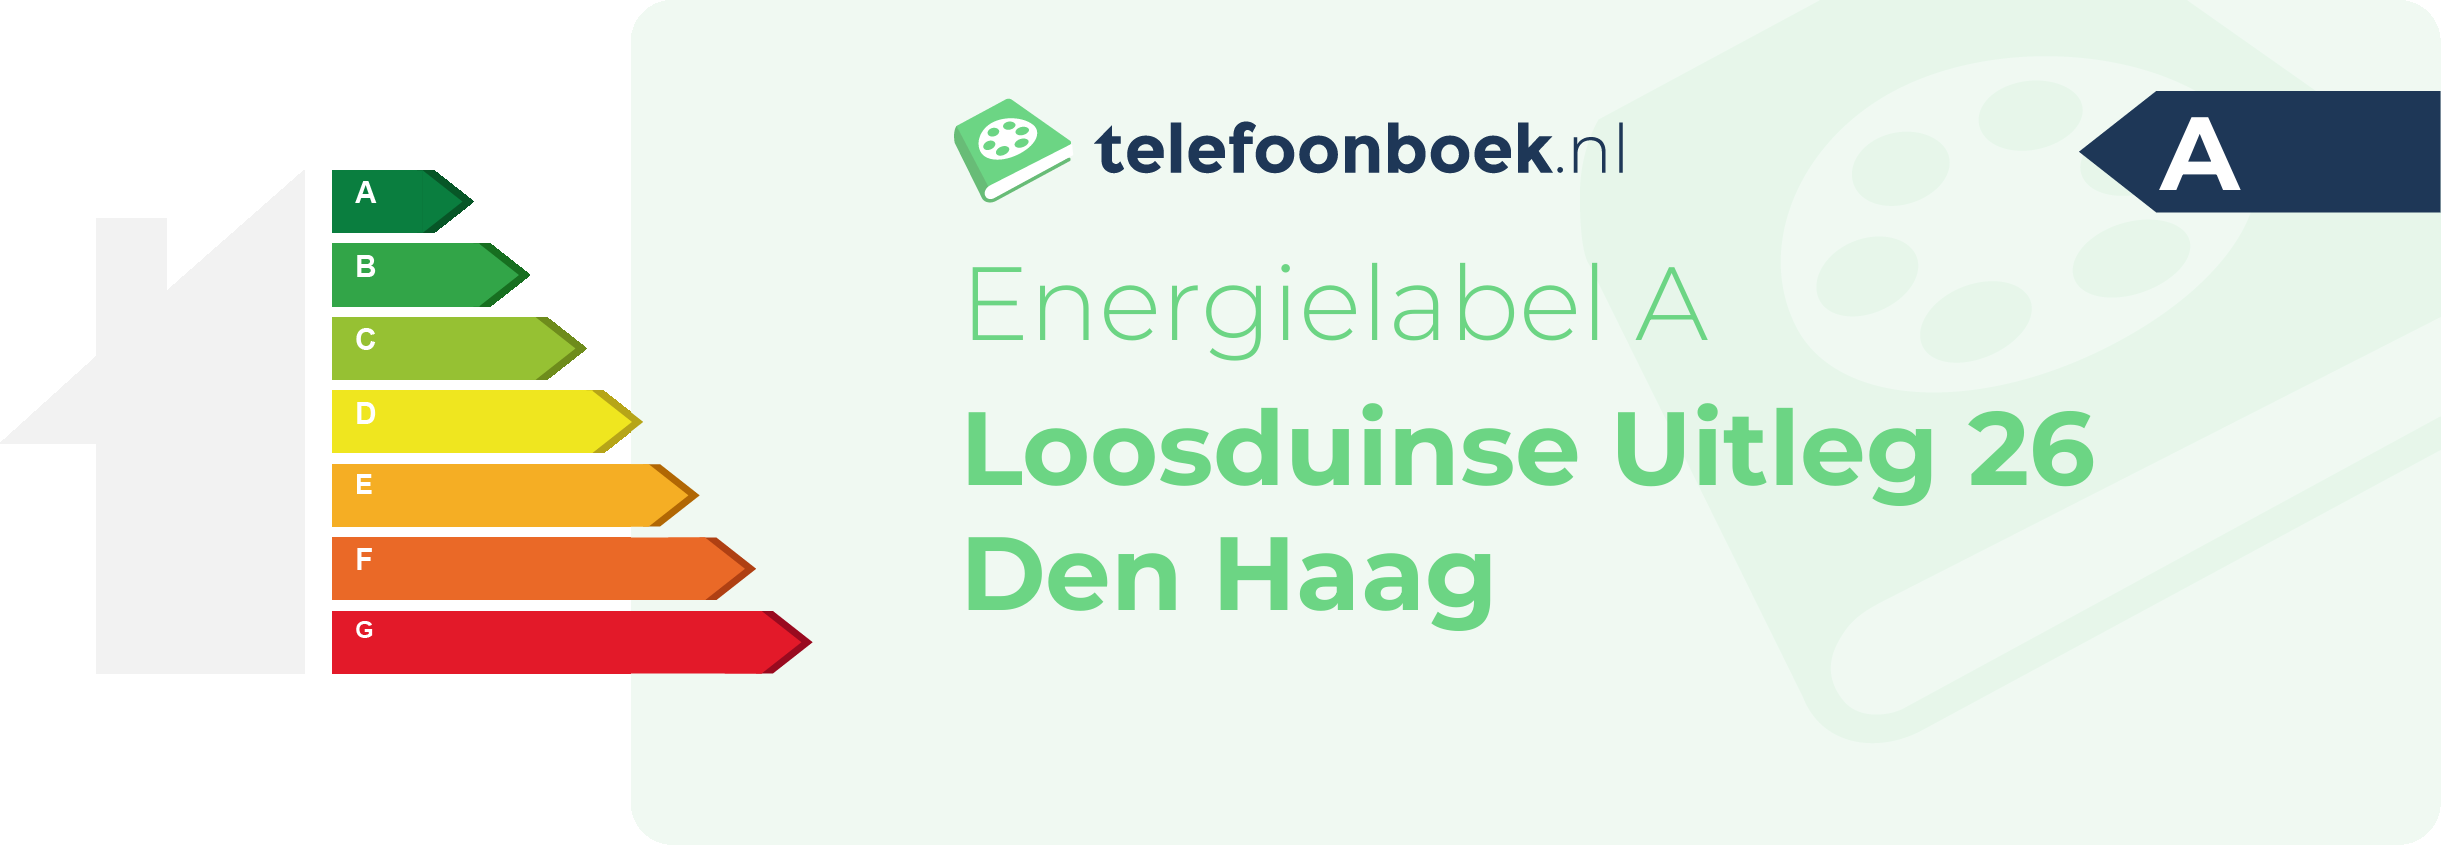 Energielabel Loosduinse Uitleg 26 Den Haag